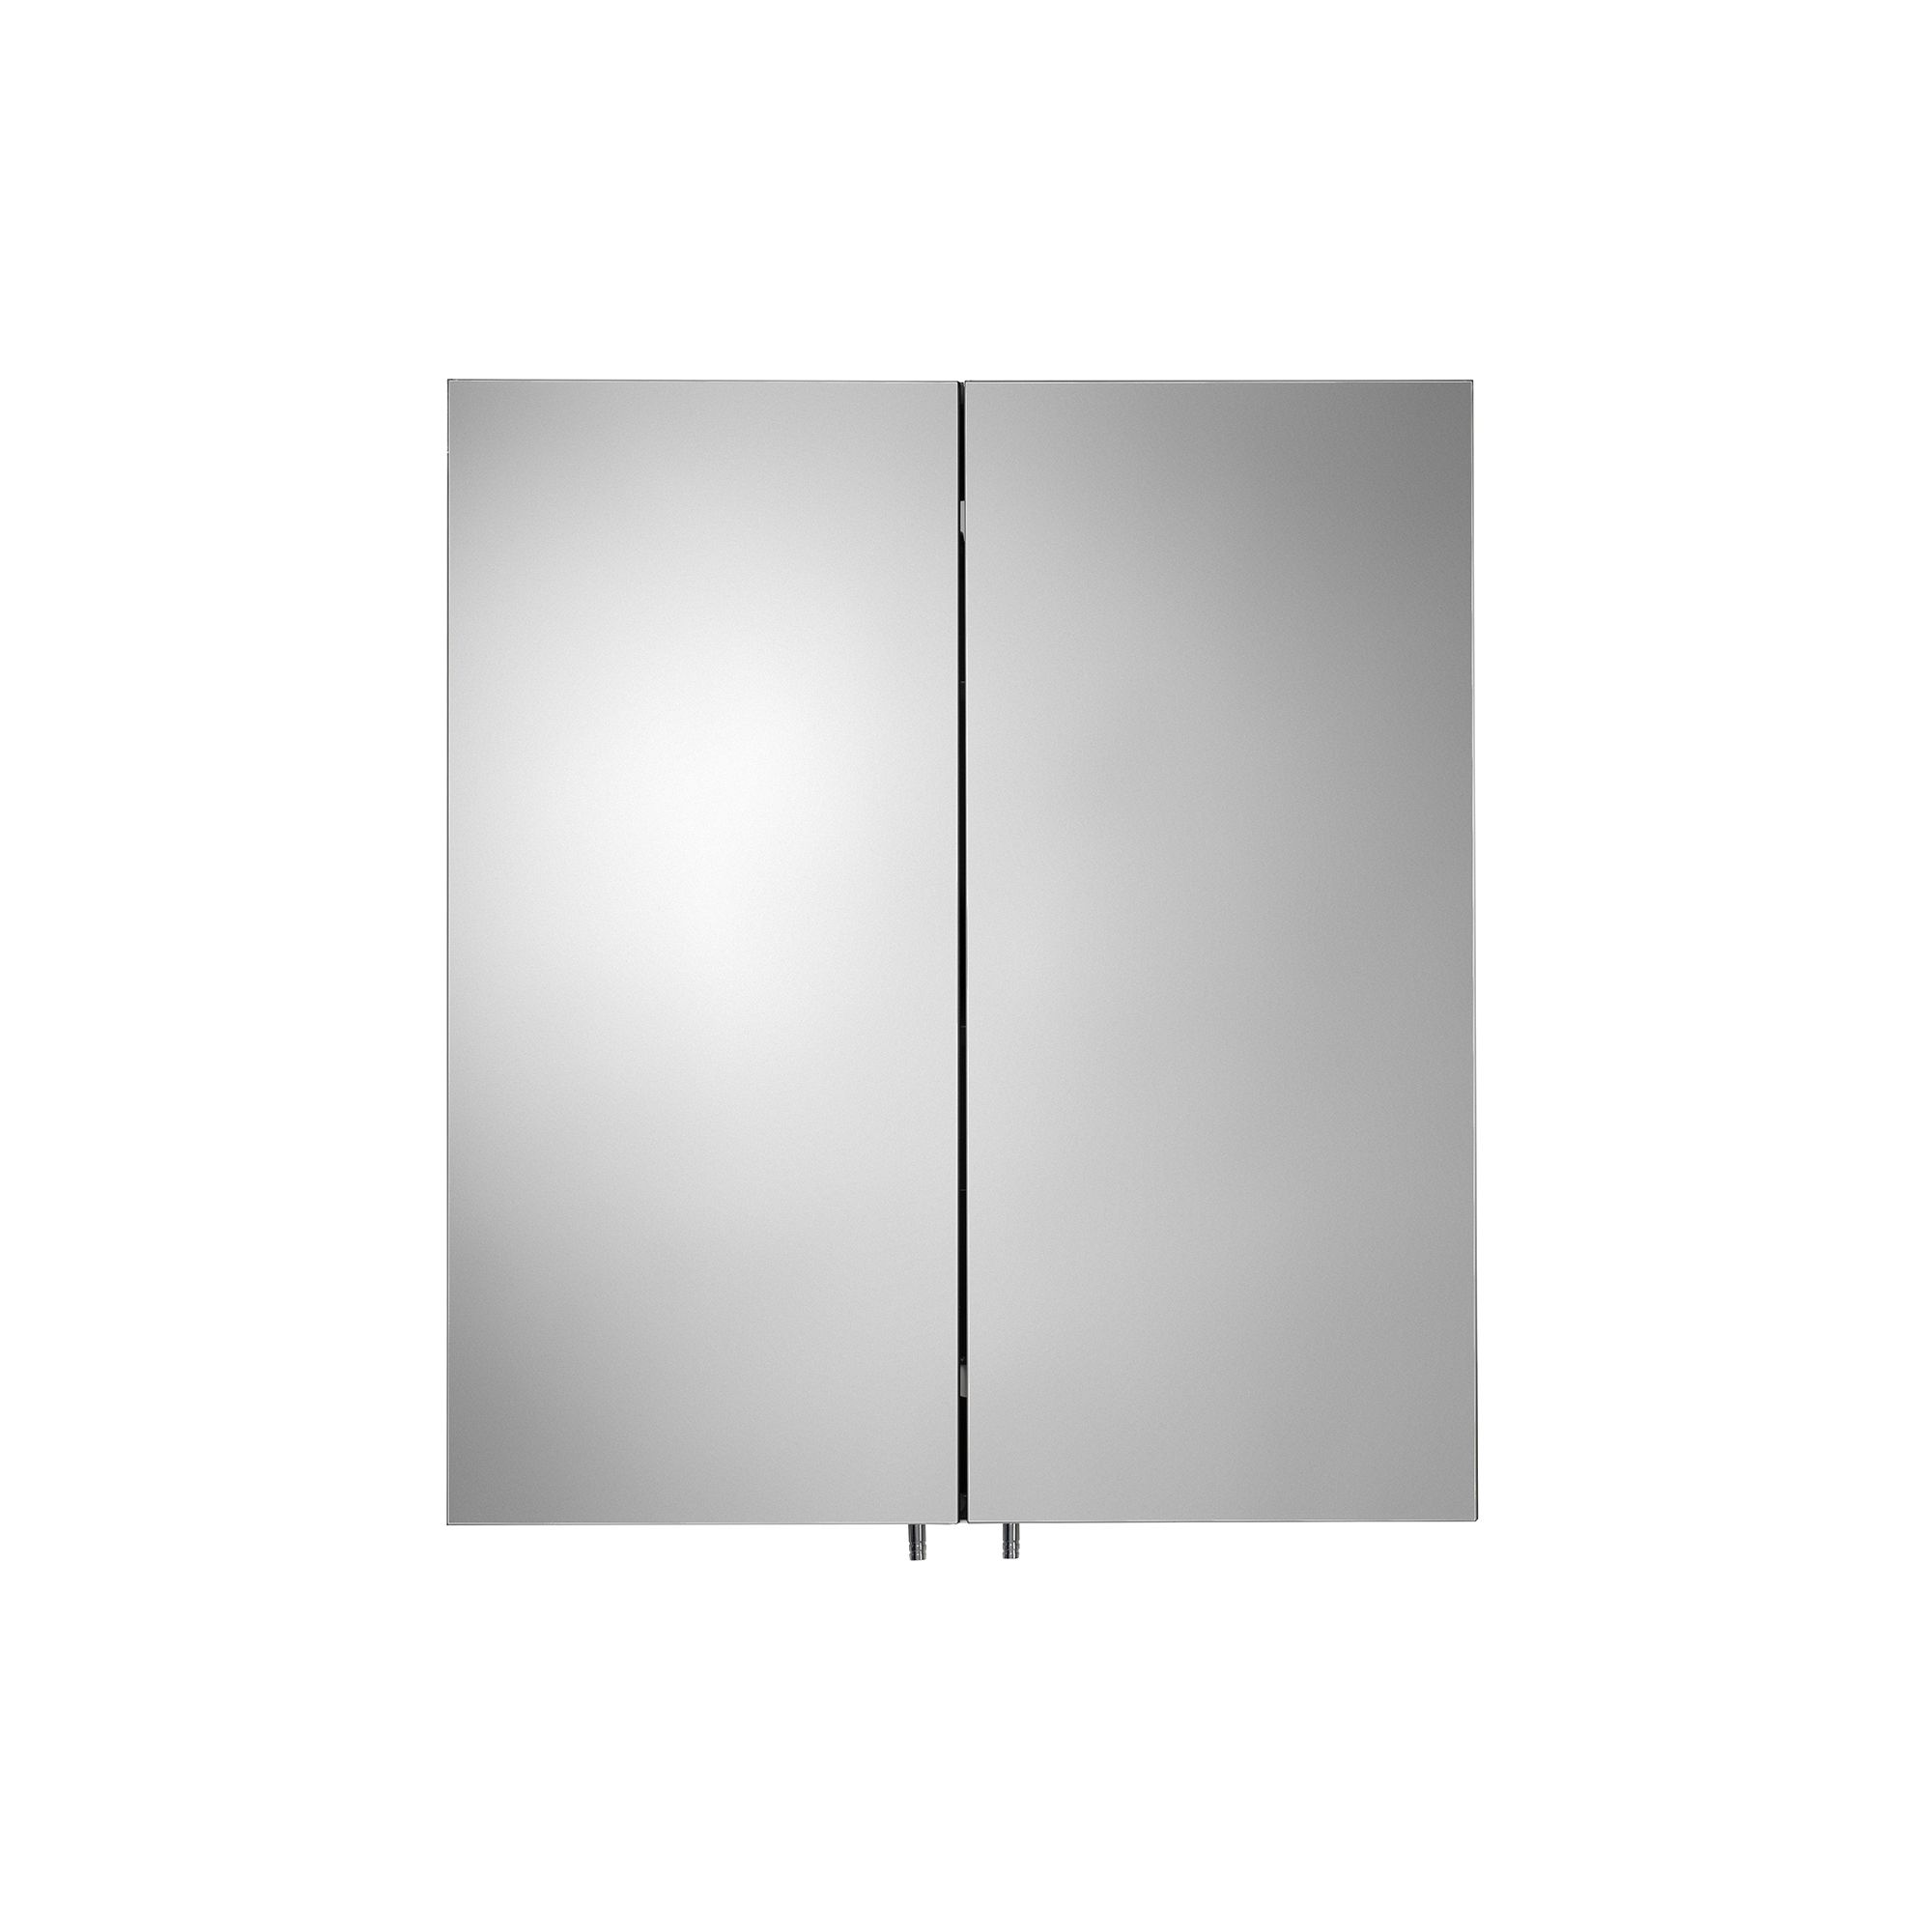 Croydex Dawley Matt Black Wall-mounted Double Bathroom Cabinet (H)67cm (W)60cm